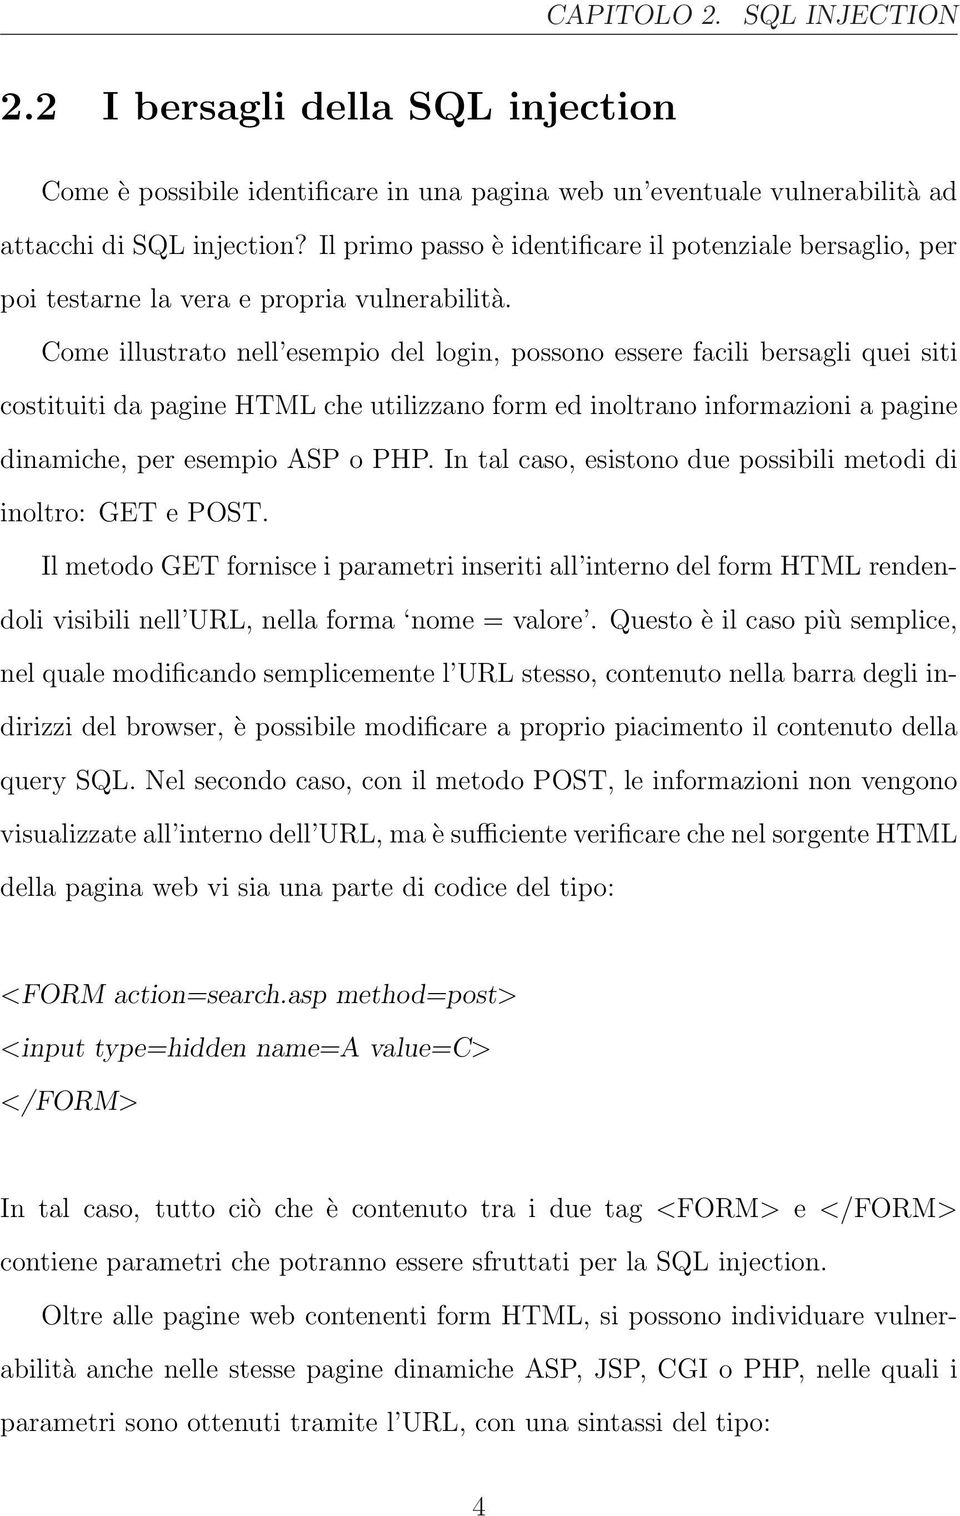 Come illustrato nell esempio del login, possono essere facili bersagli quei siti costituiti da pagine HTML che utilizzano form ed inoltrano informazioni a pagine dinamiche, per esempio ASP o PHP.